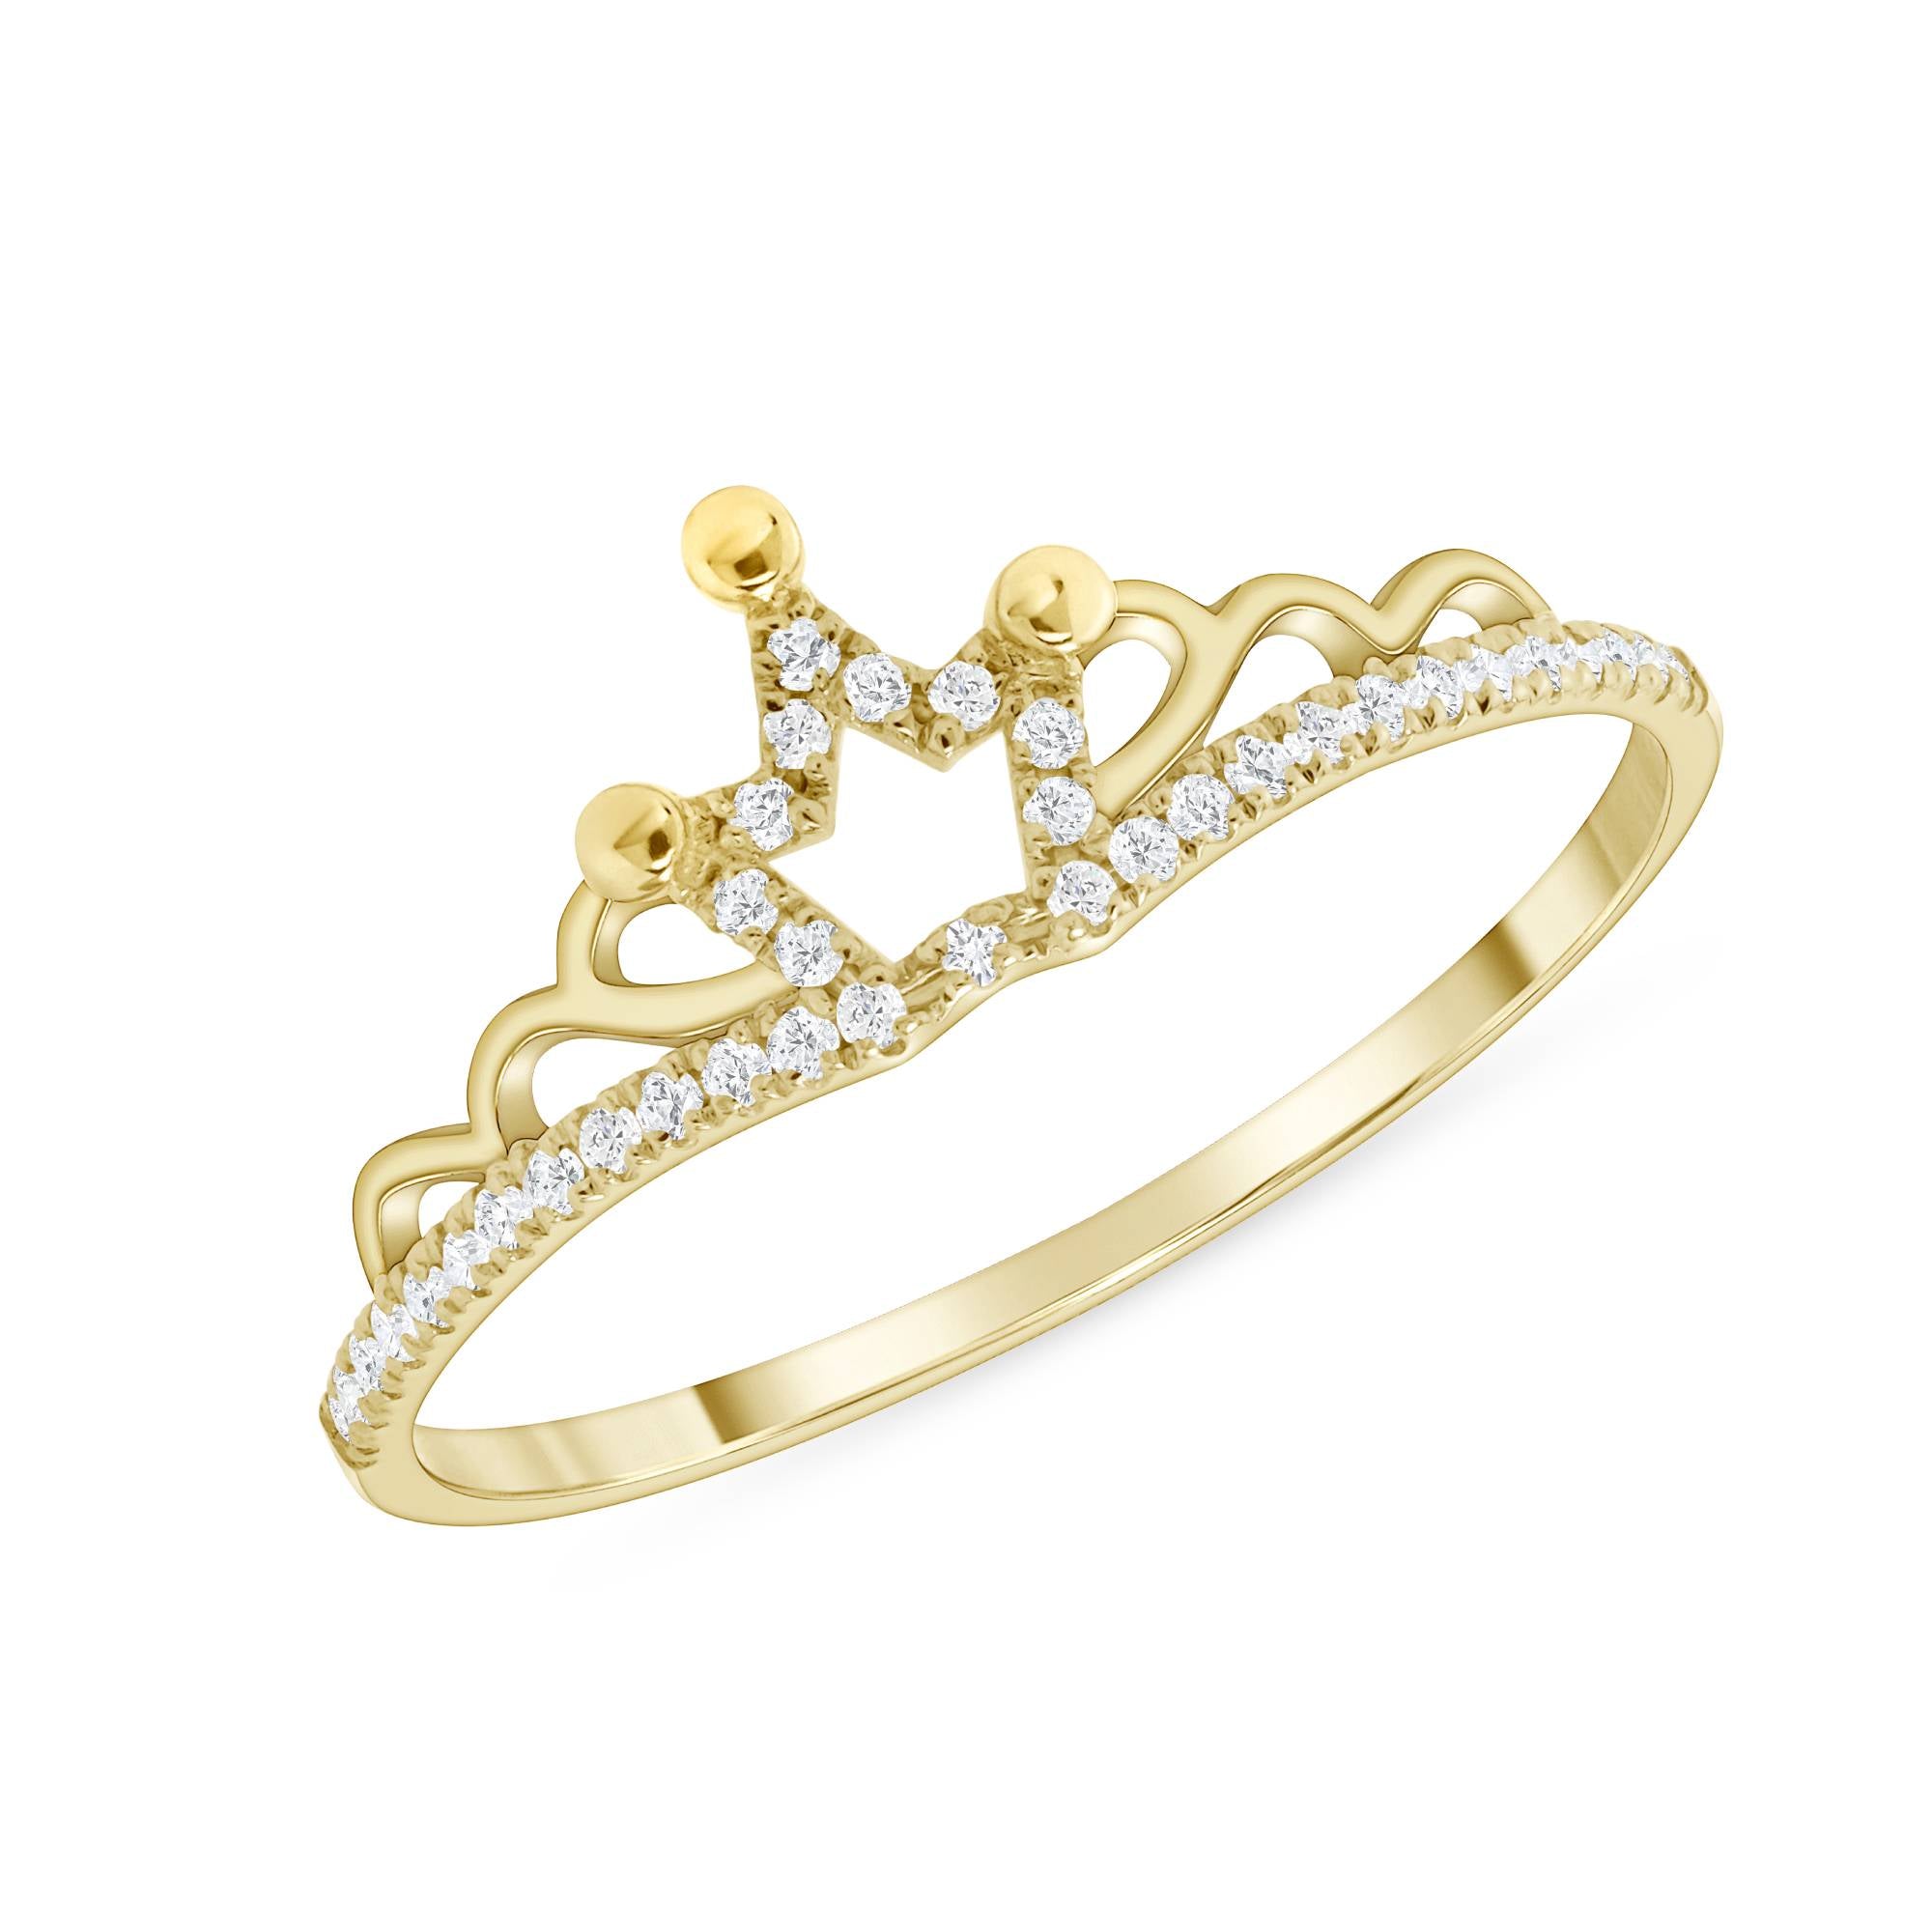 Princess Cut Diamond Engagement Ring at Rs 60000 | Diamond Engagement Ring  in Surat | ID: 2852423701648